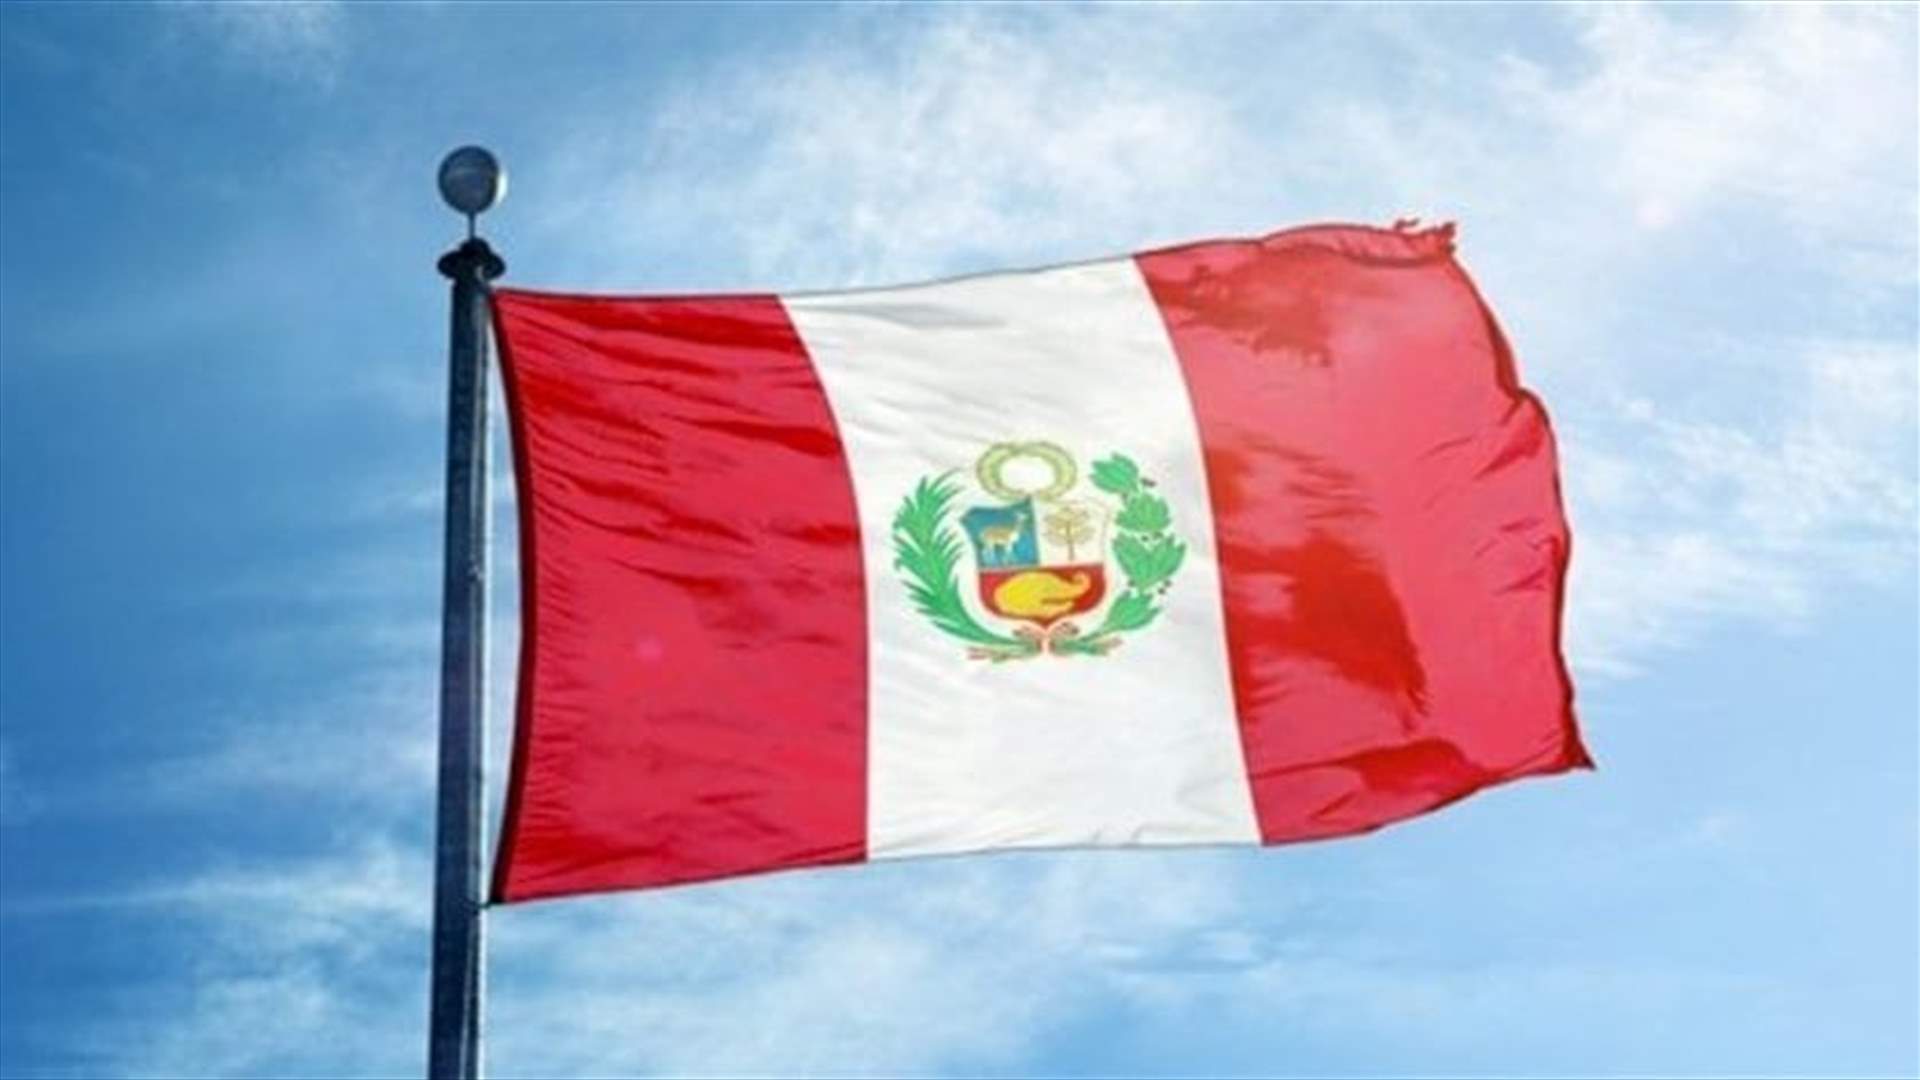 النيابة العامة في البيرو تعلن توقيف الرئيس المعزول بيدرو كاستيو